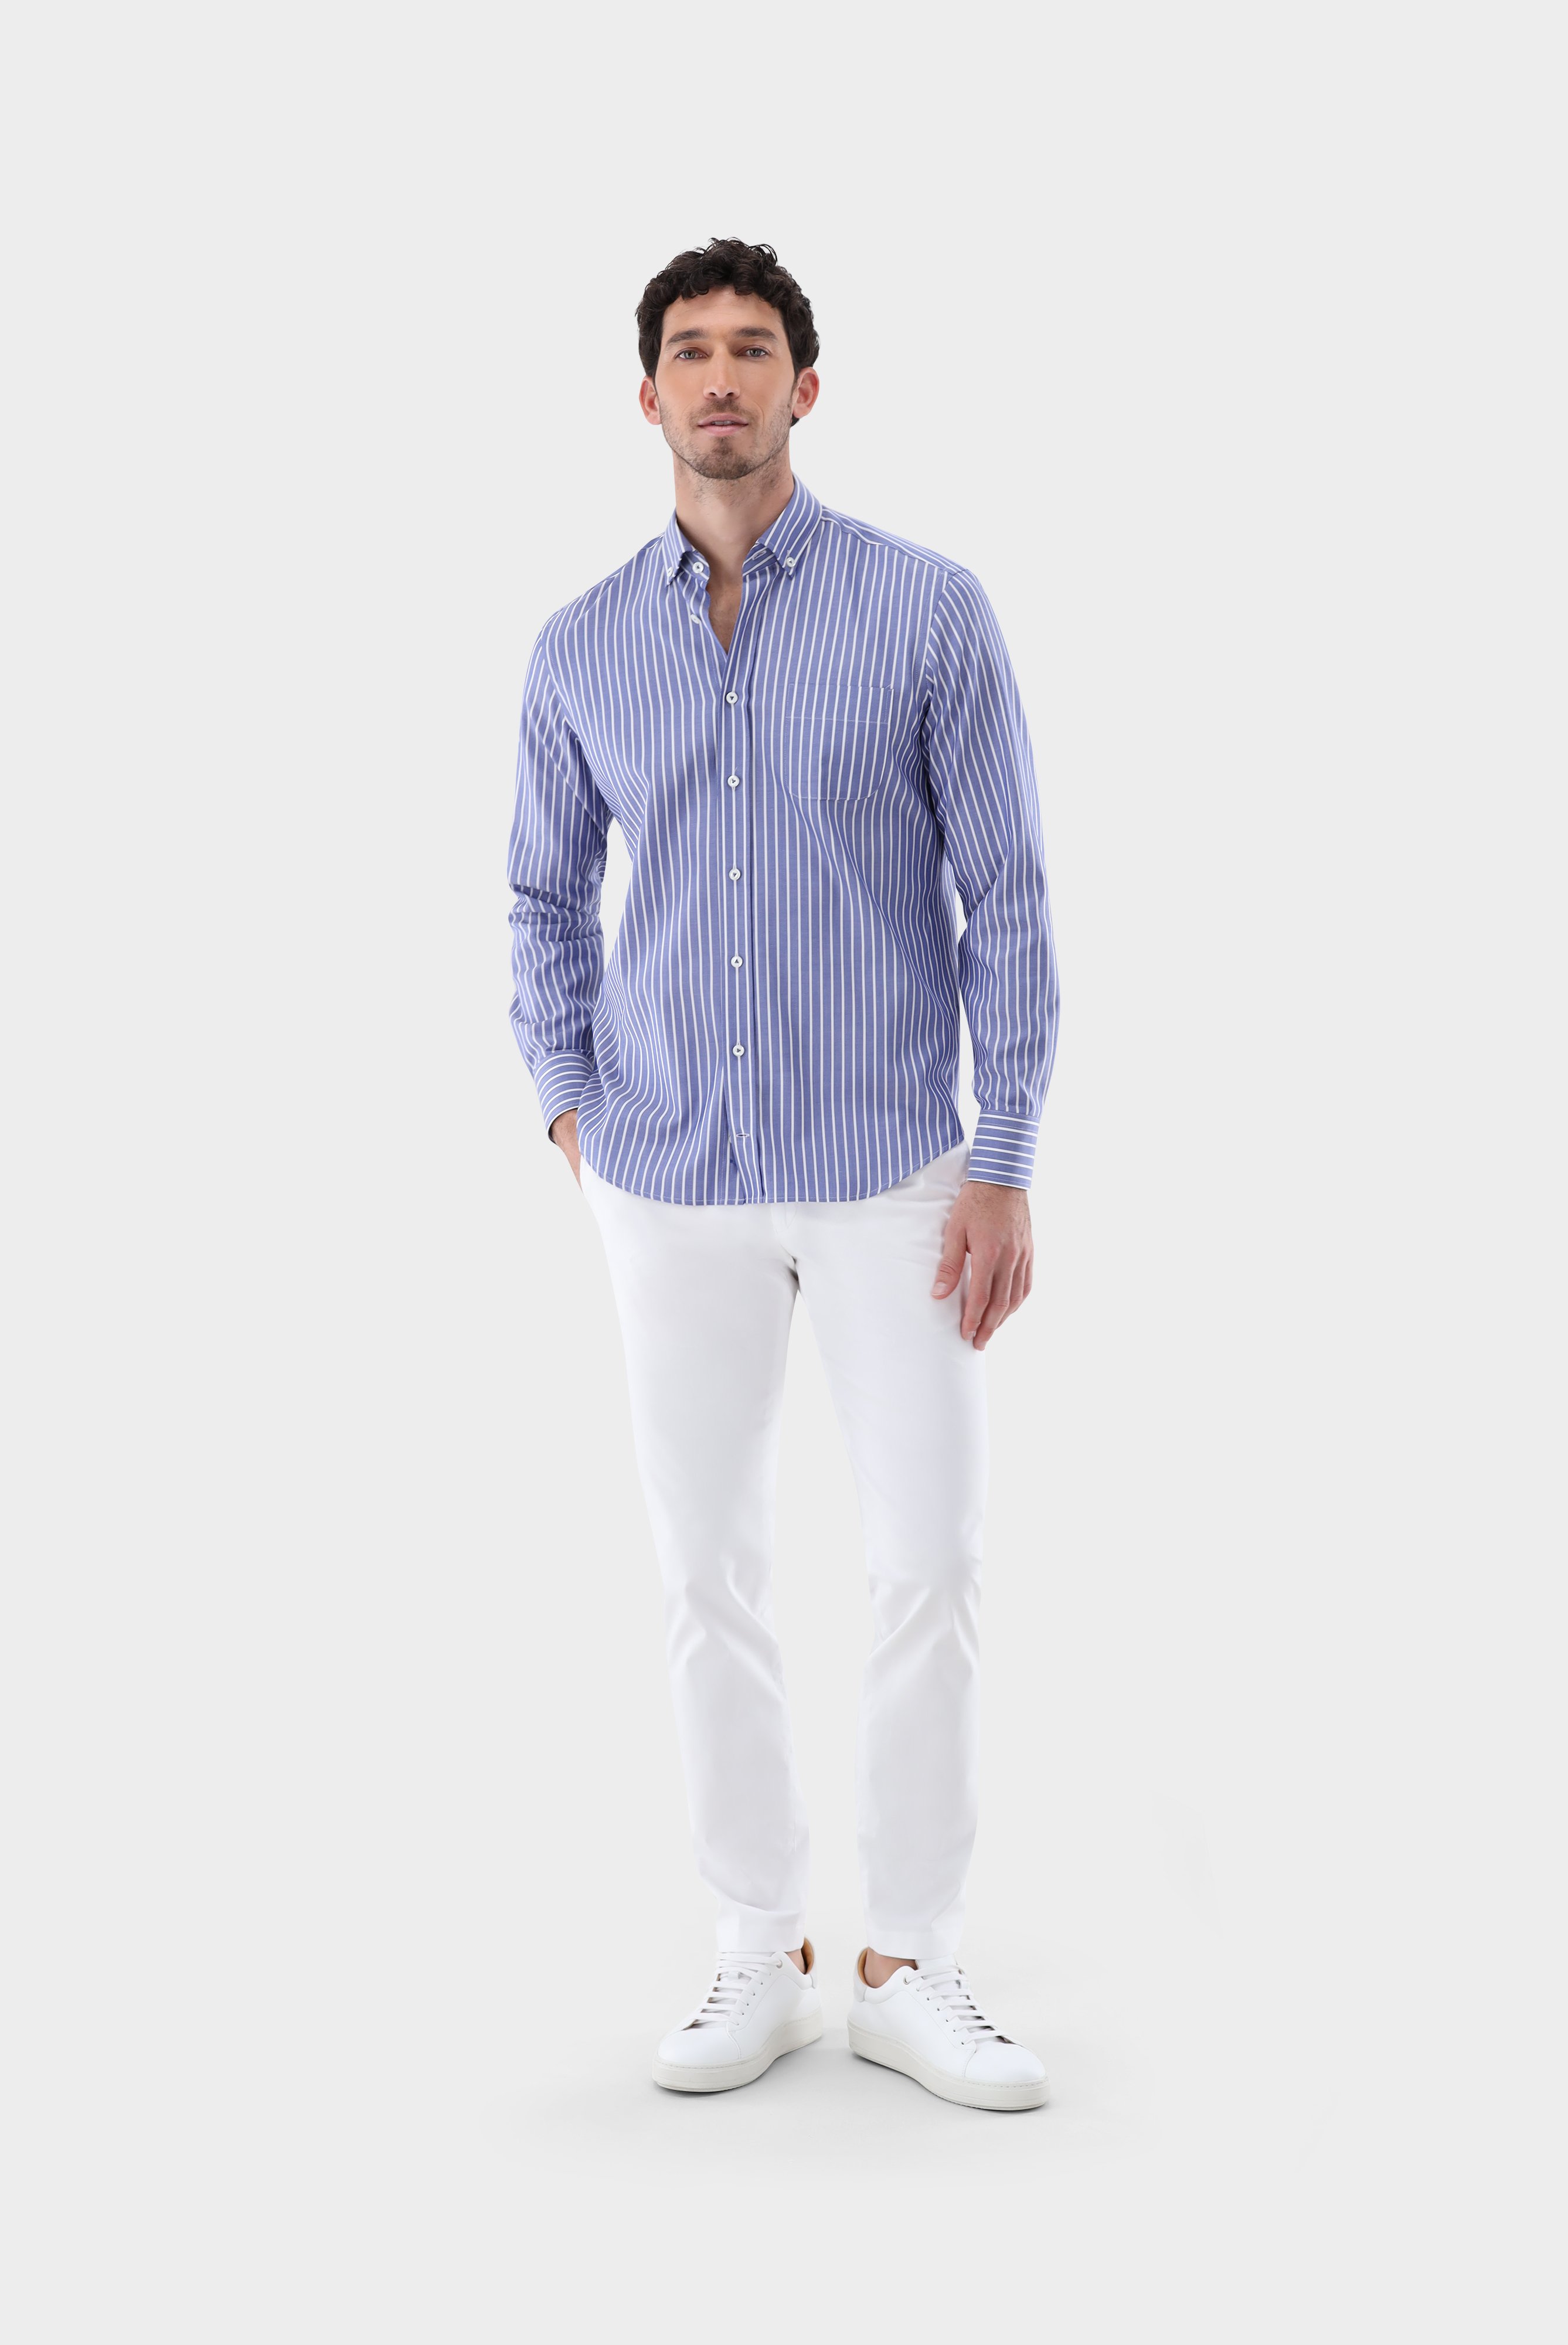 Casual Hemden+Gestreiftes Oxford Hemd Tailor Fit+20.2013.AV.151956.770.38